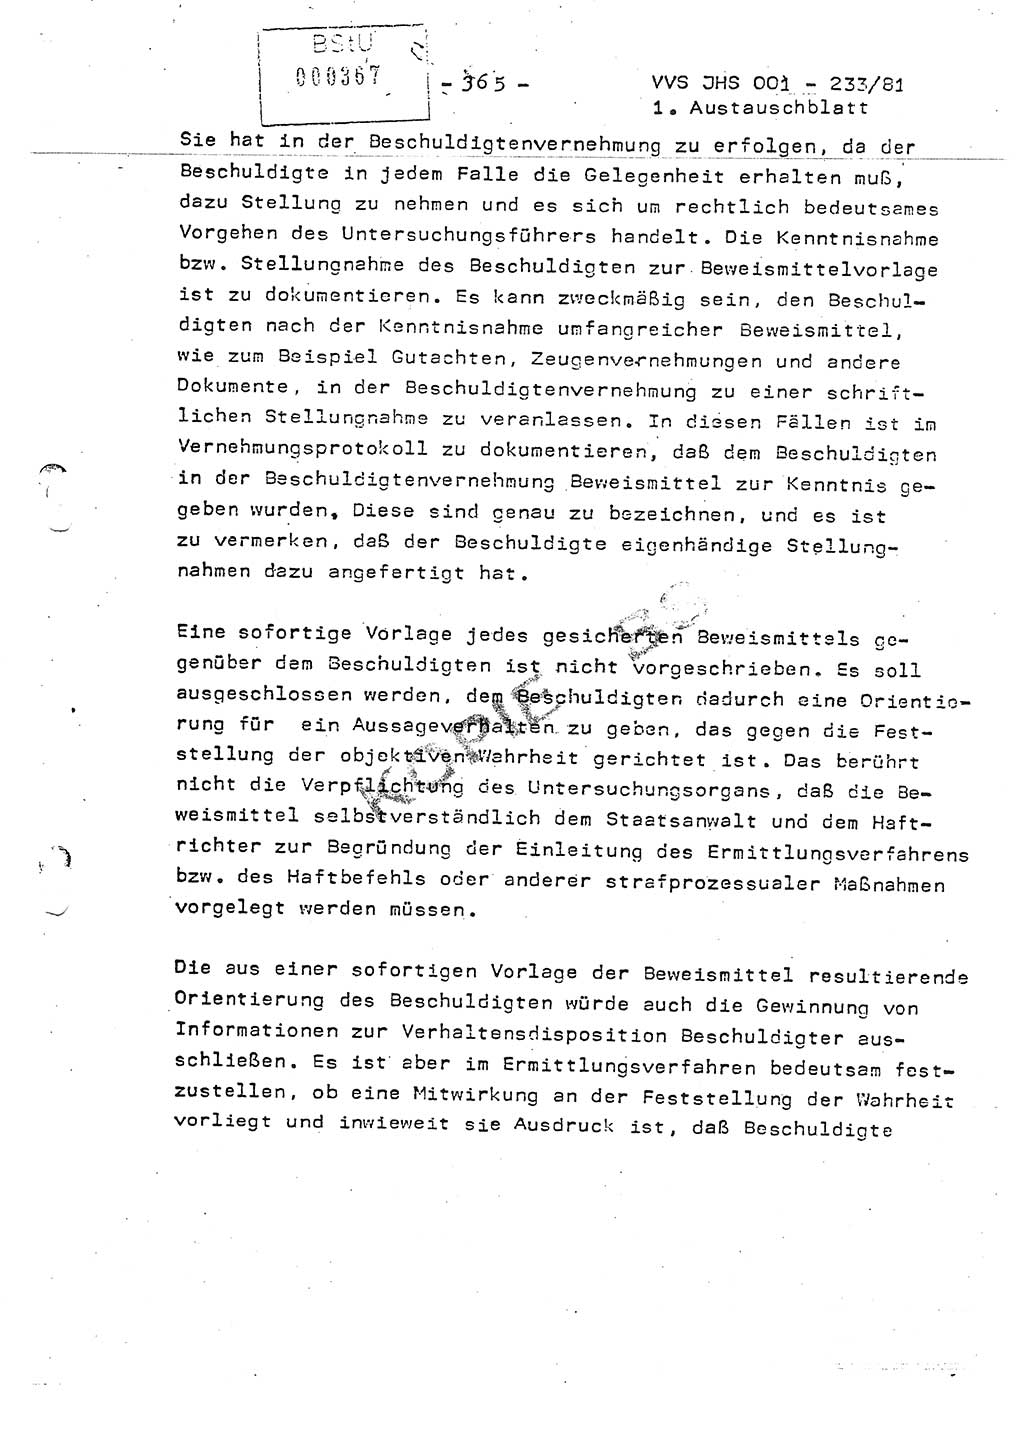 Dissertation Oberstleutnant Horst Zank (JHS), Oberstleutnant Dr. Karl-Heinz Knoblauch (JHS), Oberstleutnant Gustav-Adolf Kowalewski (HA Ⅸ), Oberstleutnant Wolfgang Plötner (HA Ⅸ), Ministerium für Staatssicherheit (MfS) [Deutsche Demokratische Republik (DDR)], Juristische Hochschule (JHS), Vertrauliche Verschlußsache (VVS) o001-233/81, Potsdam 1981, Blatt 365 (Diss. MfS DDR JHS VVS o001-233/81 1981, Bl. 365)